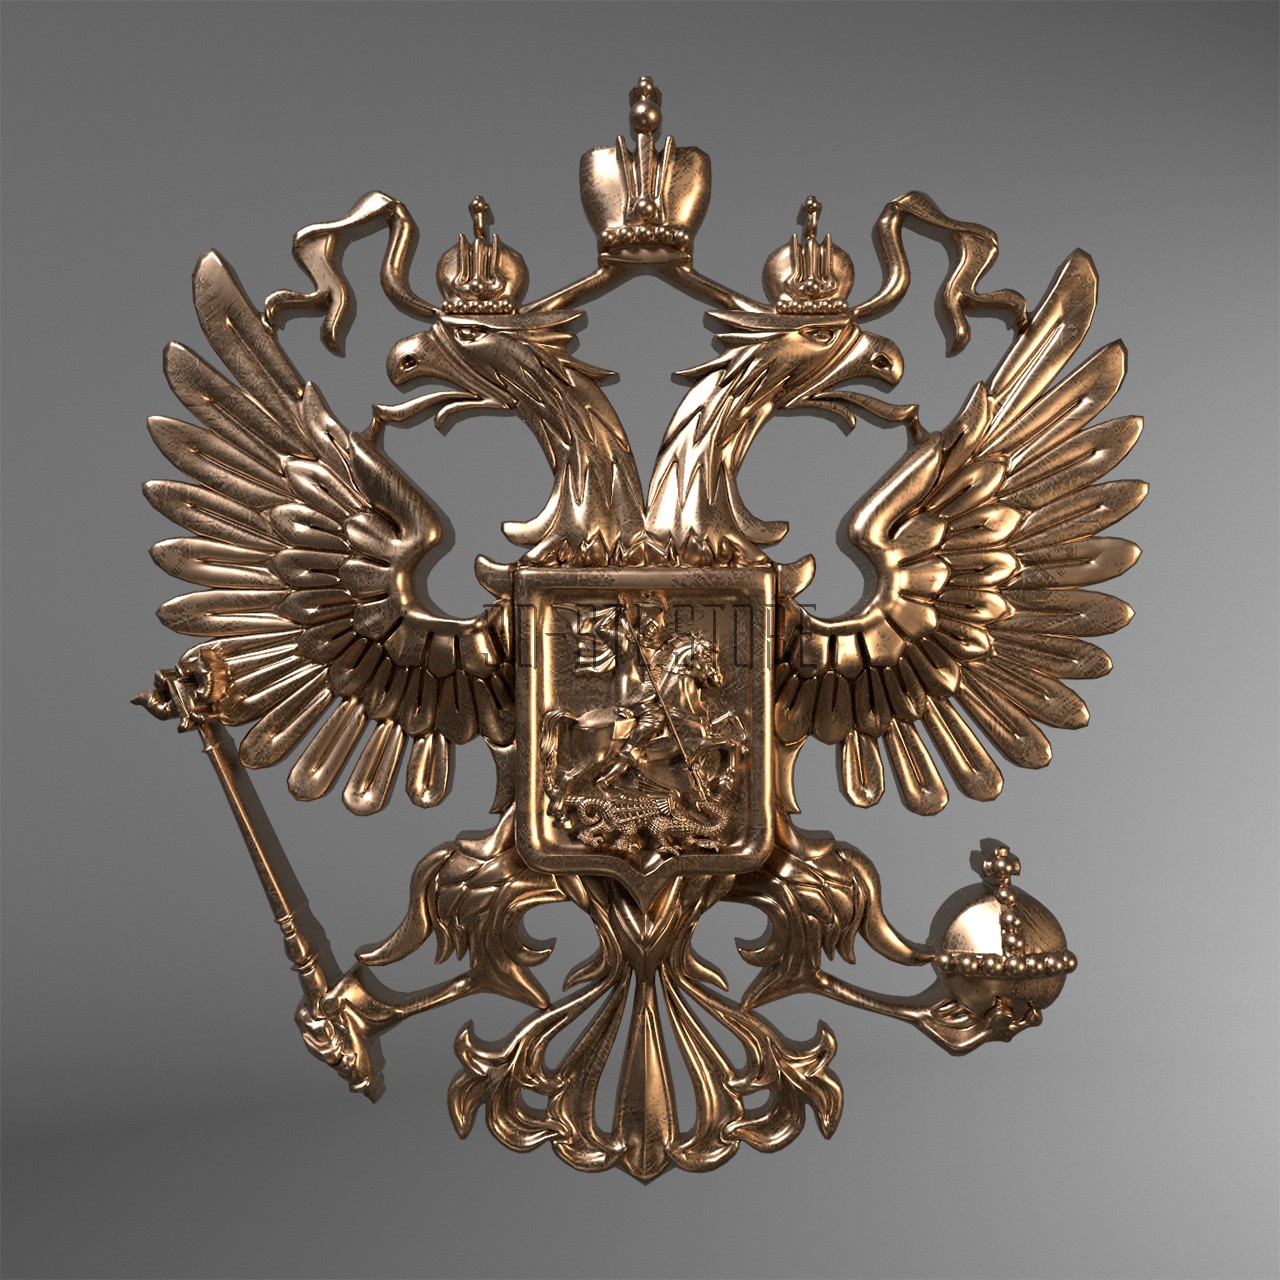 The emblem of the Russia, 3d models (stl)